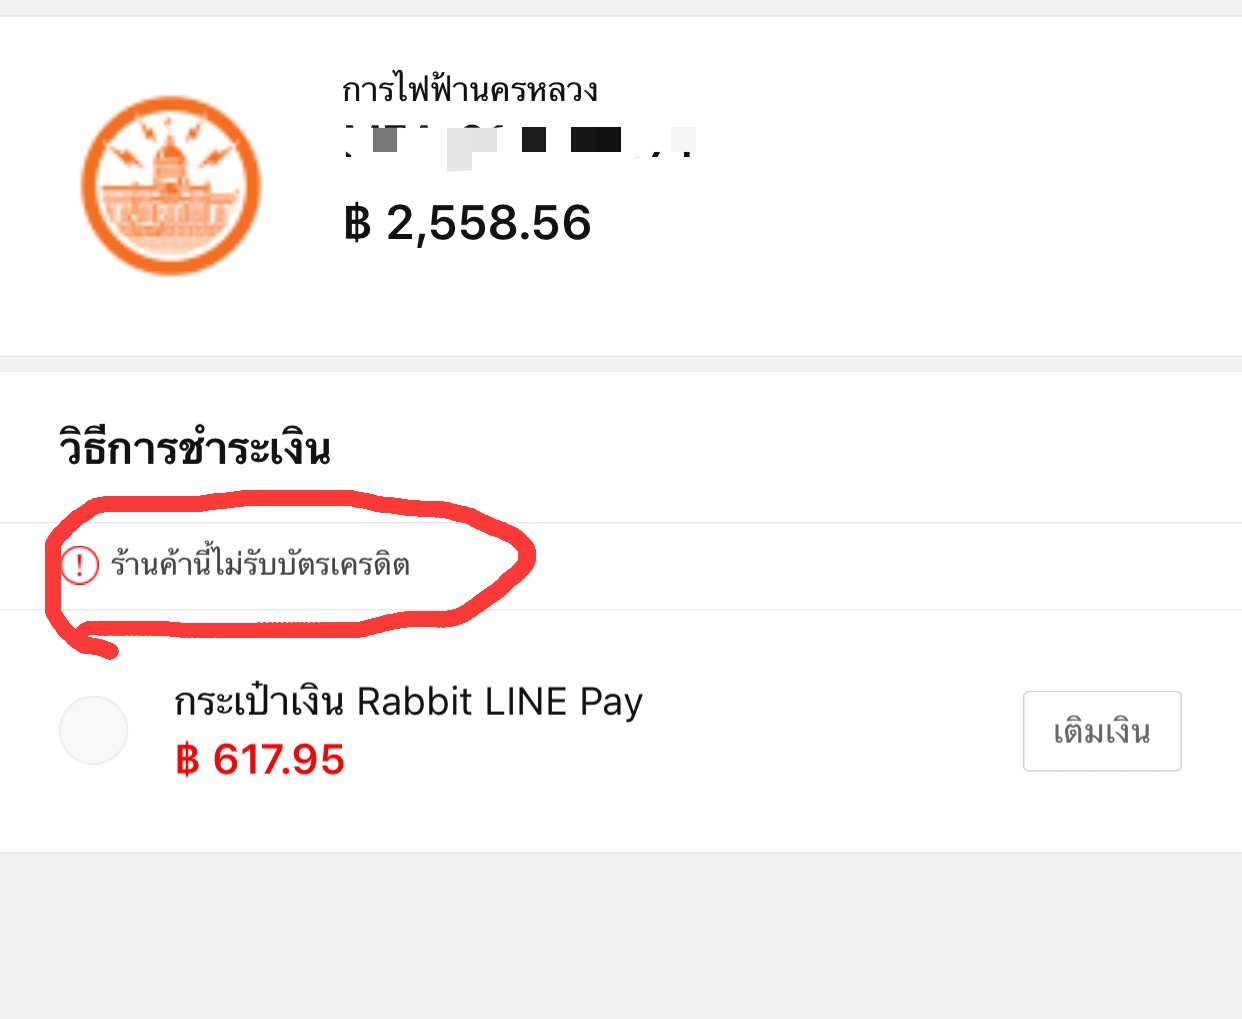 จ่ายเงินค่าไฟผ่าน Rabbit Linepay ด้วยบัตรเครดิต ได้แต้มไหมครับ - Pantip